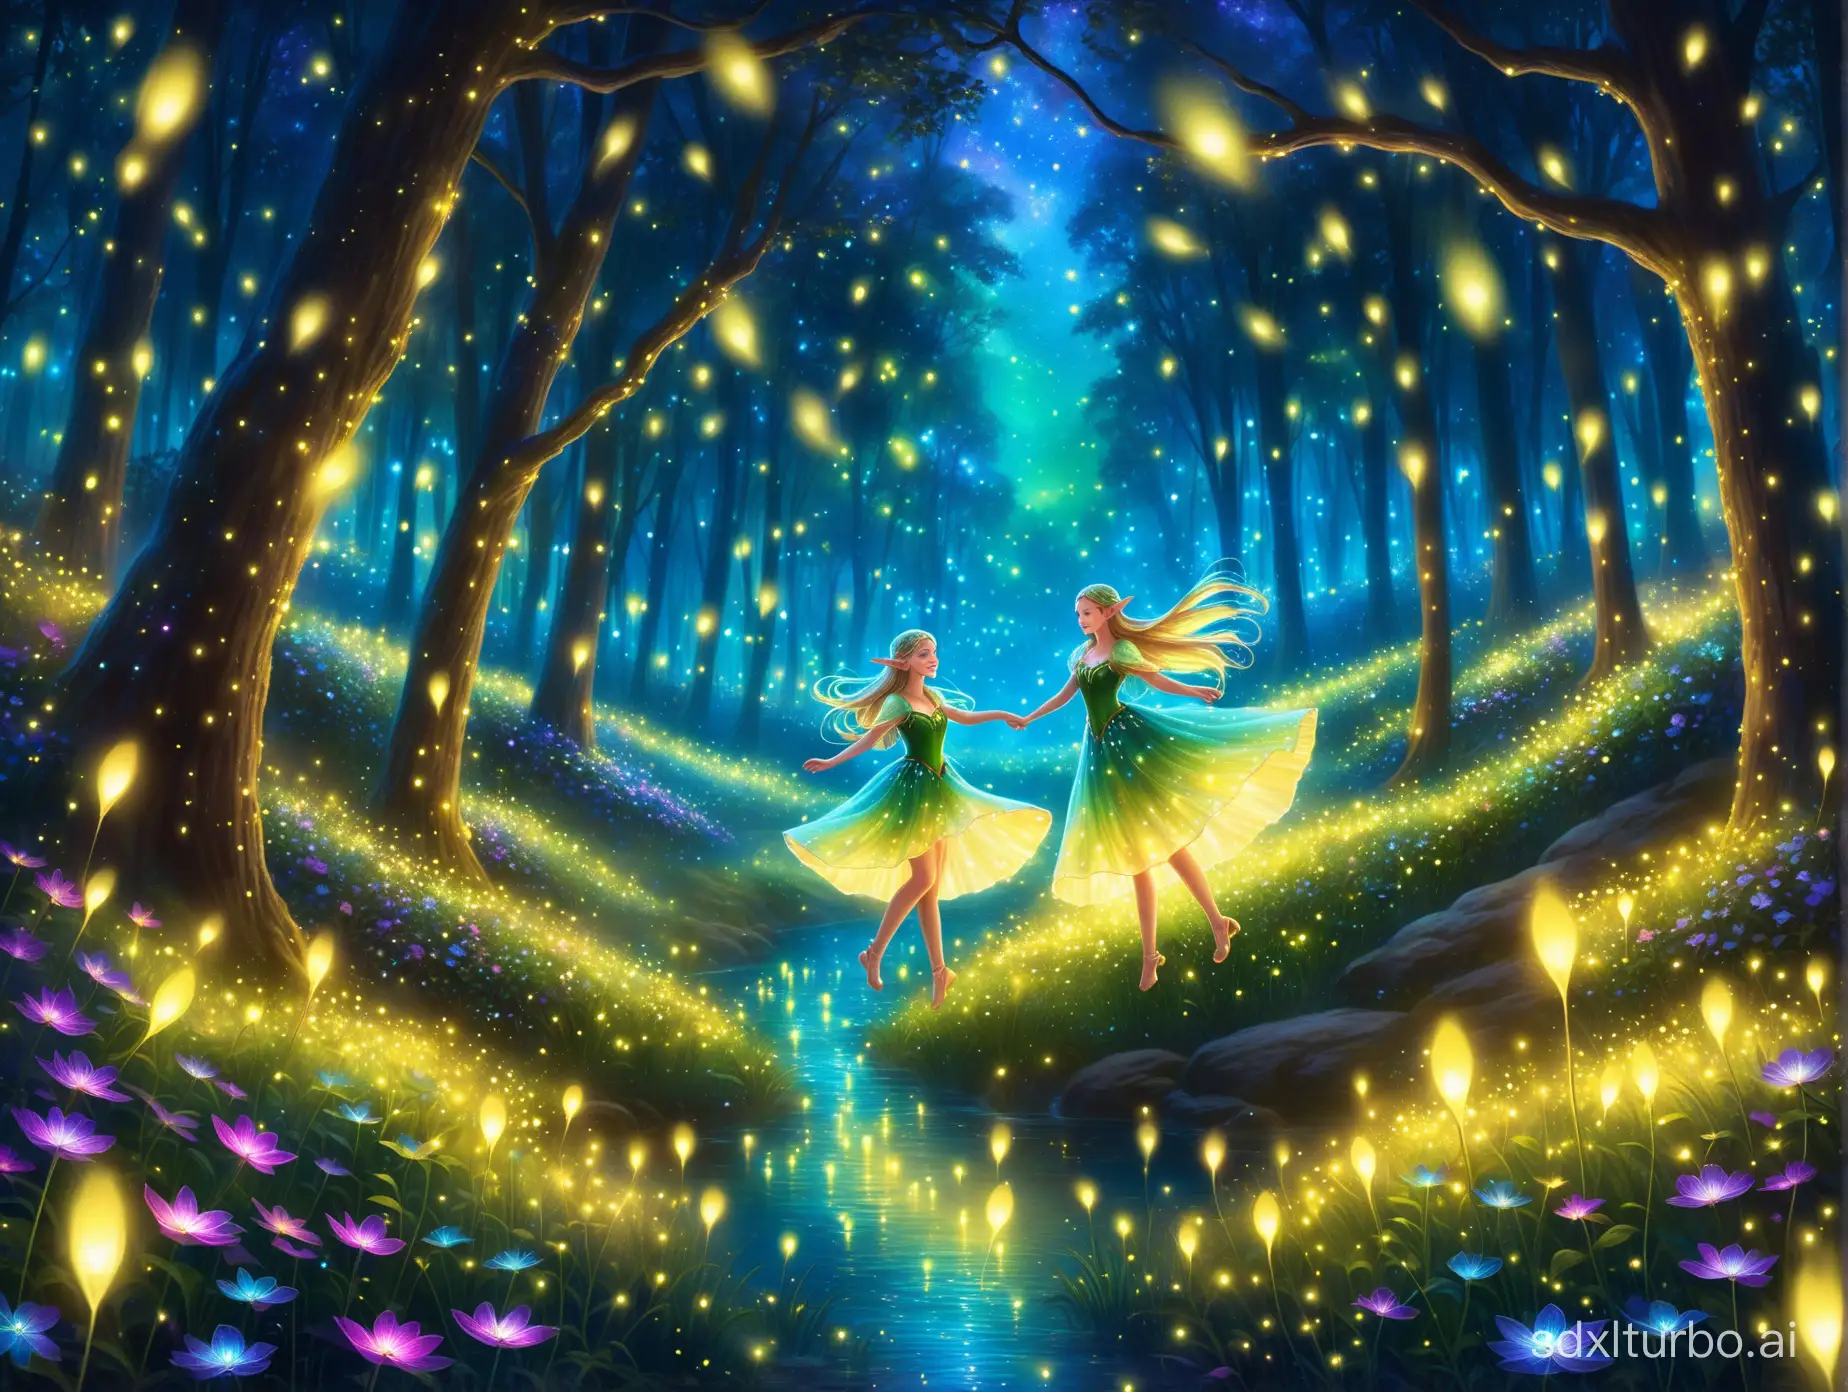 精靈, , 花裙, 在夢幻森林起舞。螢⽕蟲環繞, 夜光植物, 如夢似幻的光線。⾼度
詳細, 寫實, 奇幻故事書⾵格。⾊彩鮮艷, 空靈美感。